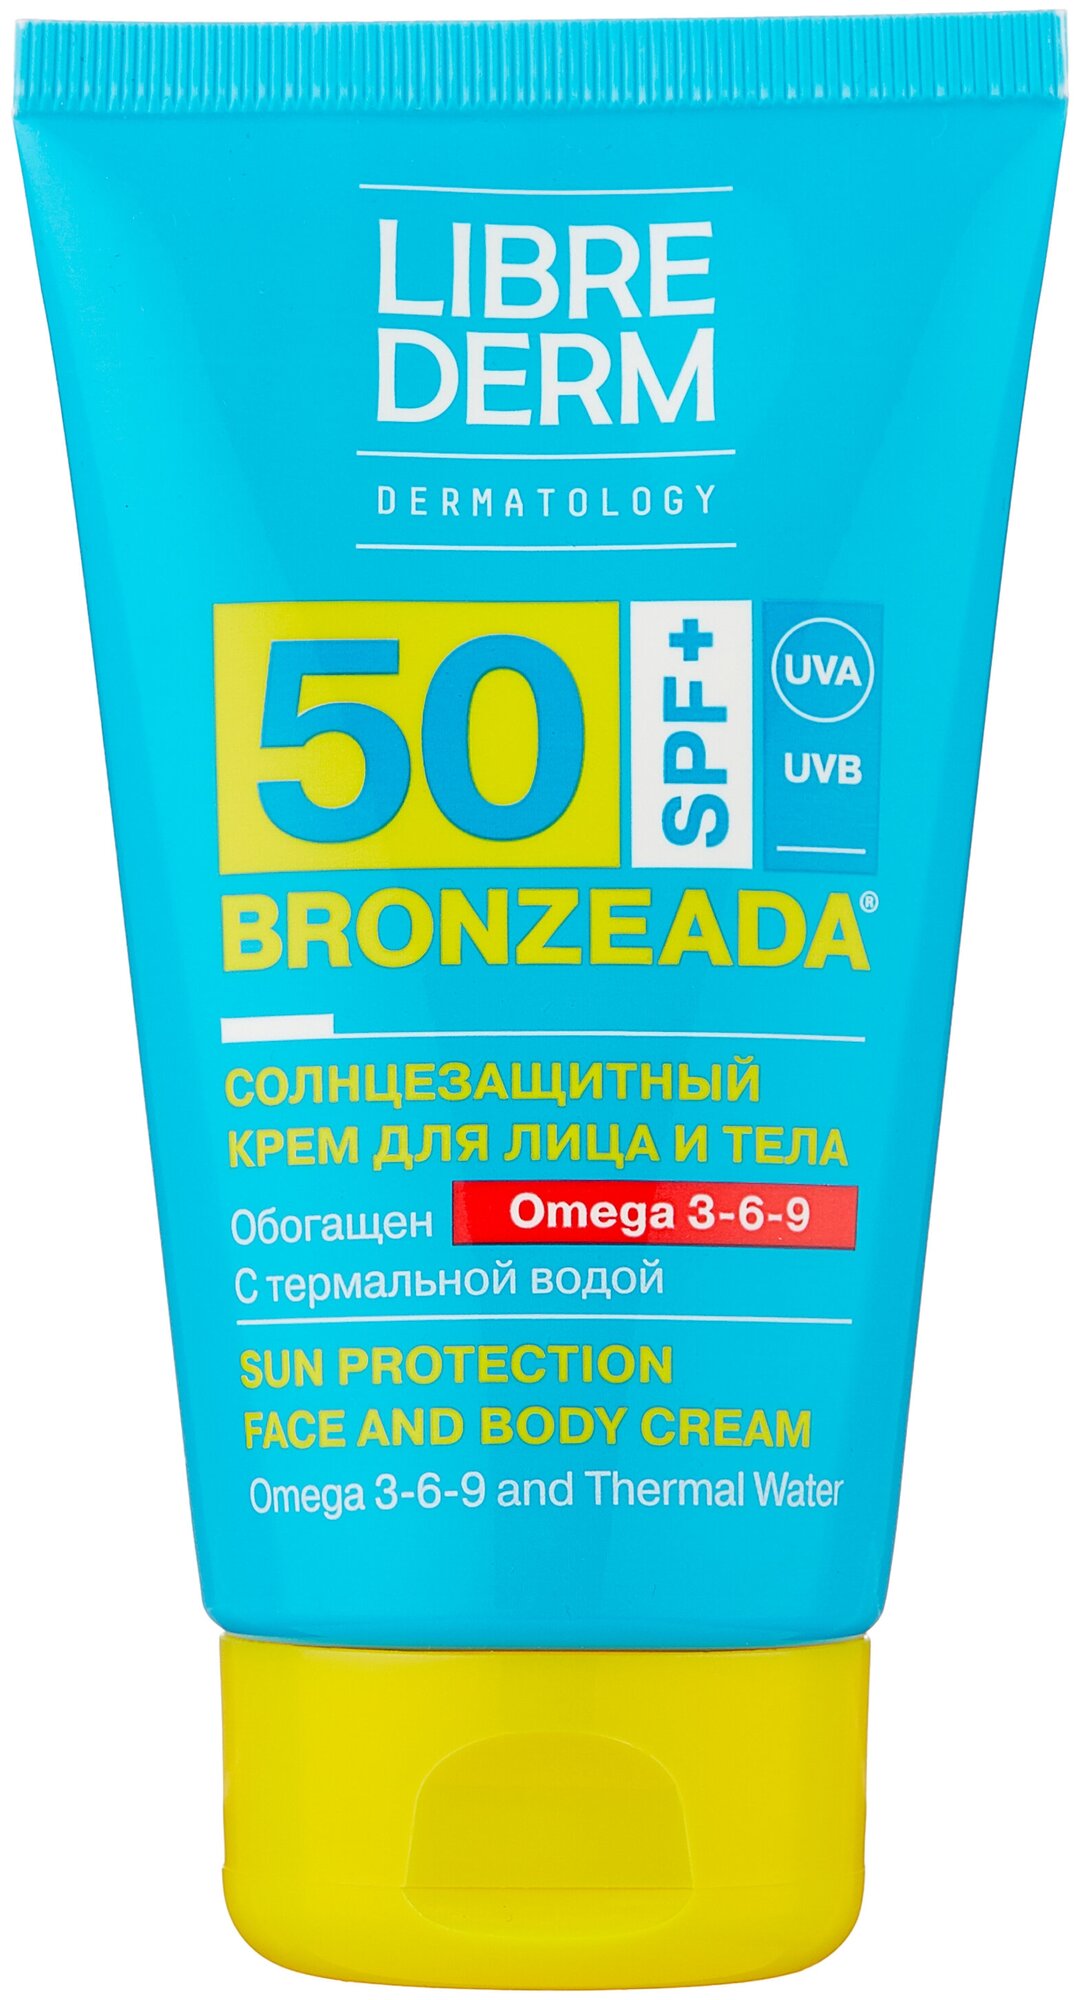 Librederm Librederm Bronzeada солнцезащитный крем для лица и тела Omega 3-6-9